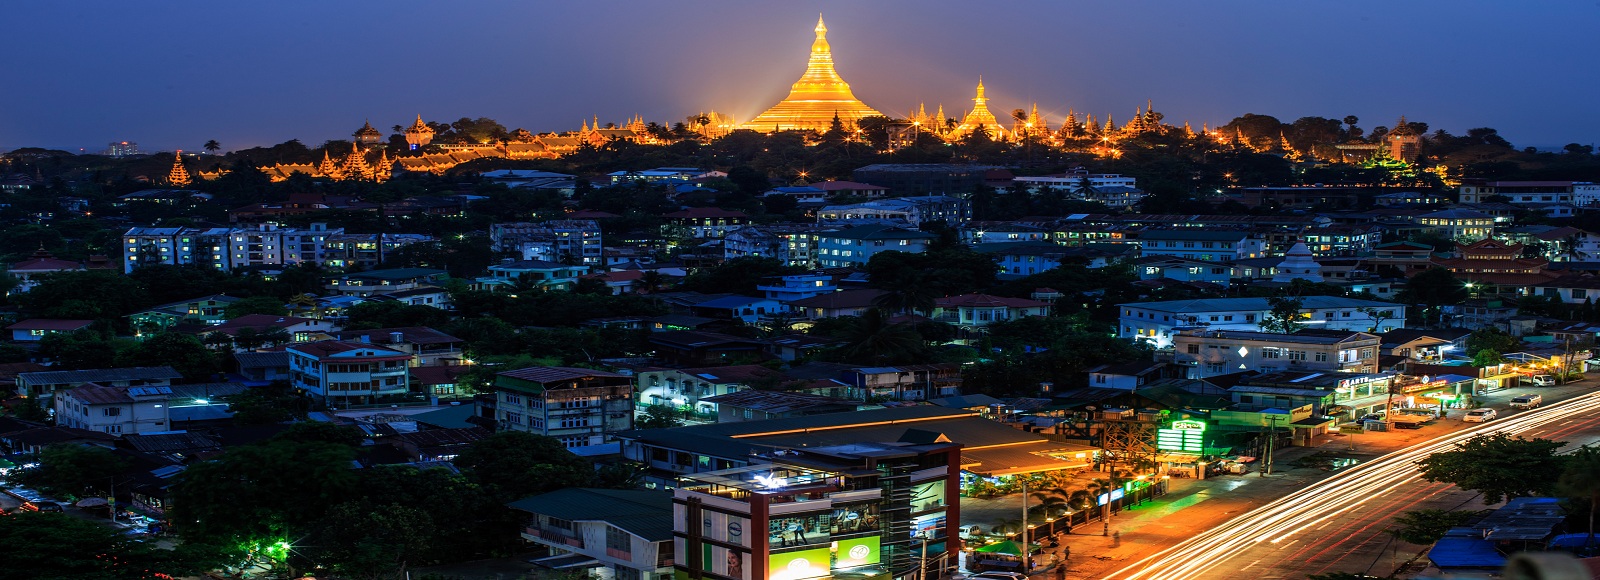 Ofertas de Traslados en Birmania. Traslados económicos en Birmania 